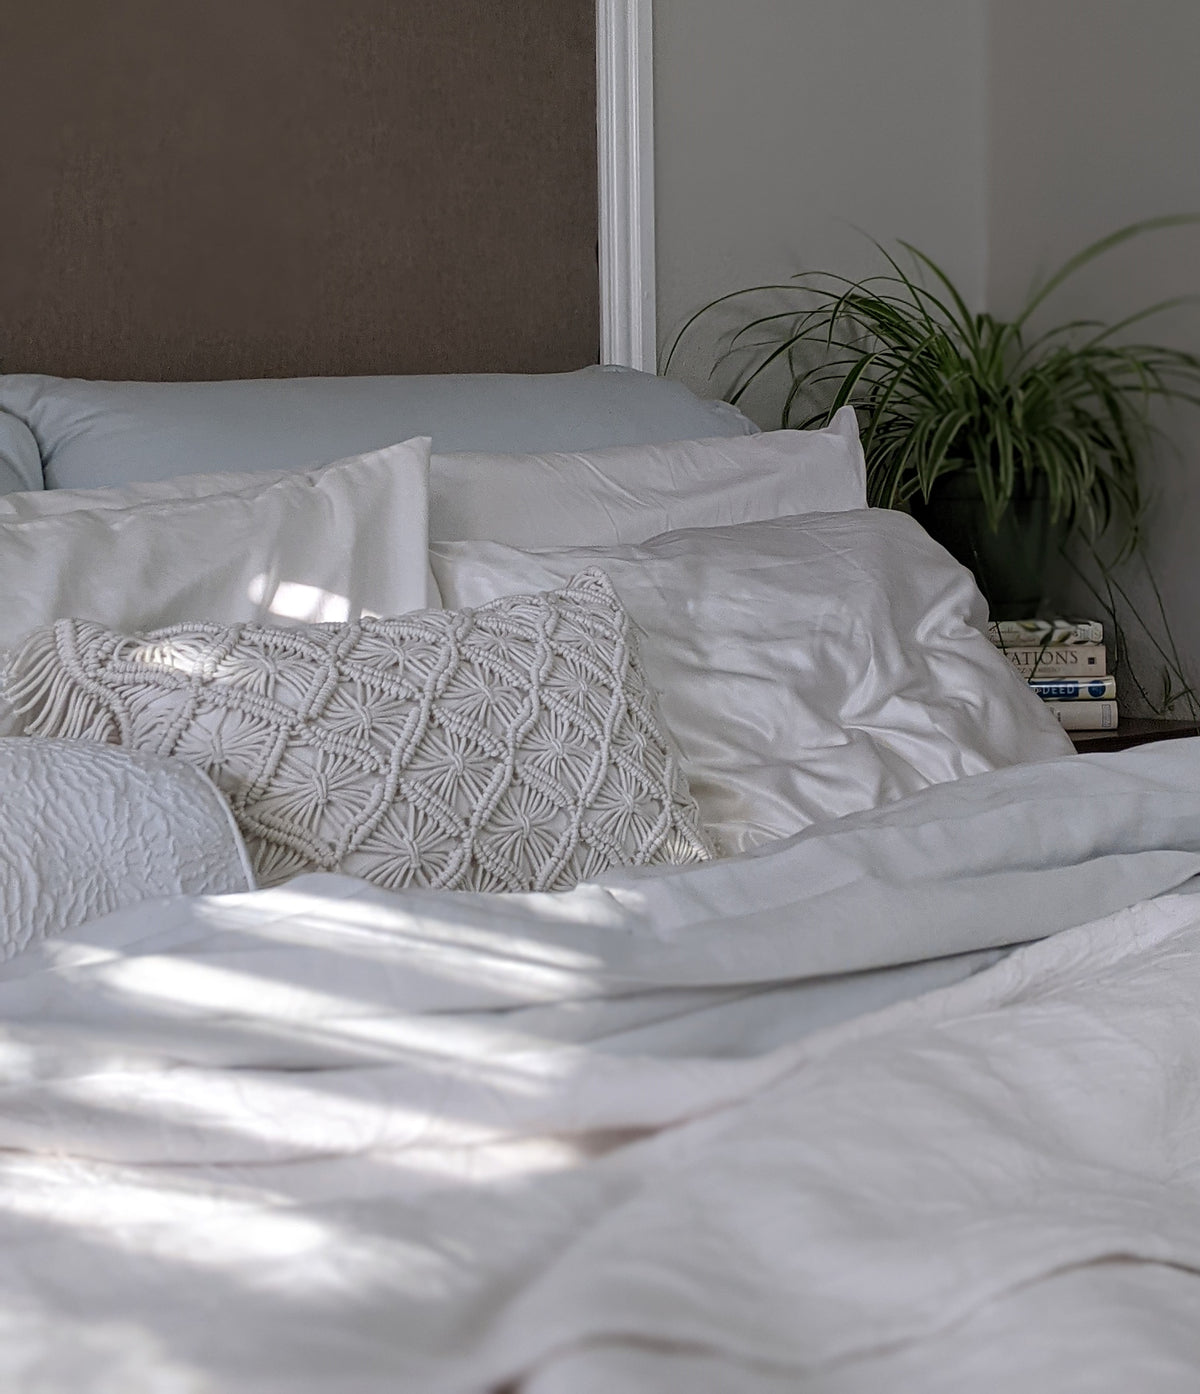 Ein Bett mit weisser Bettwäsche. In der Ecke auf dem Nachttisch steht eine Grünlilie.